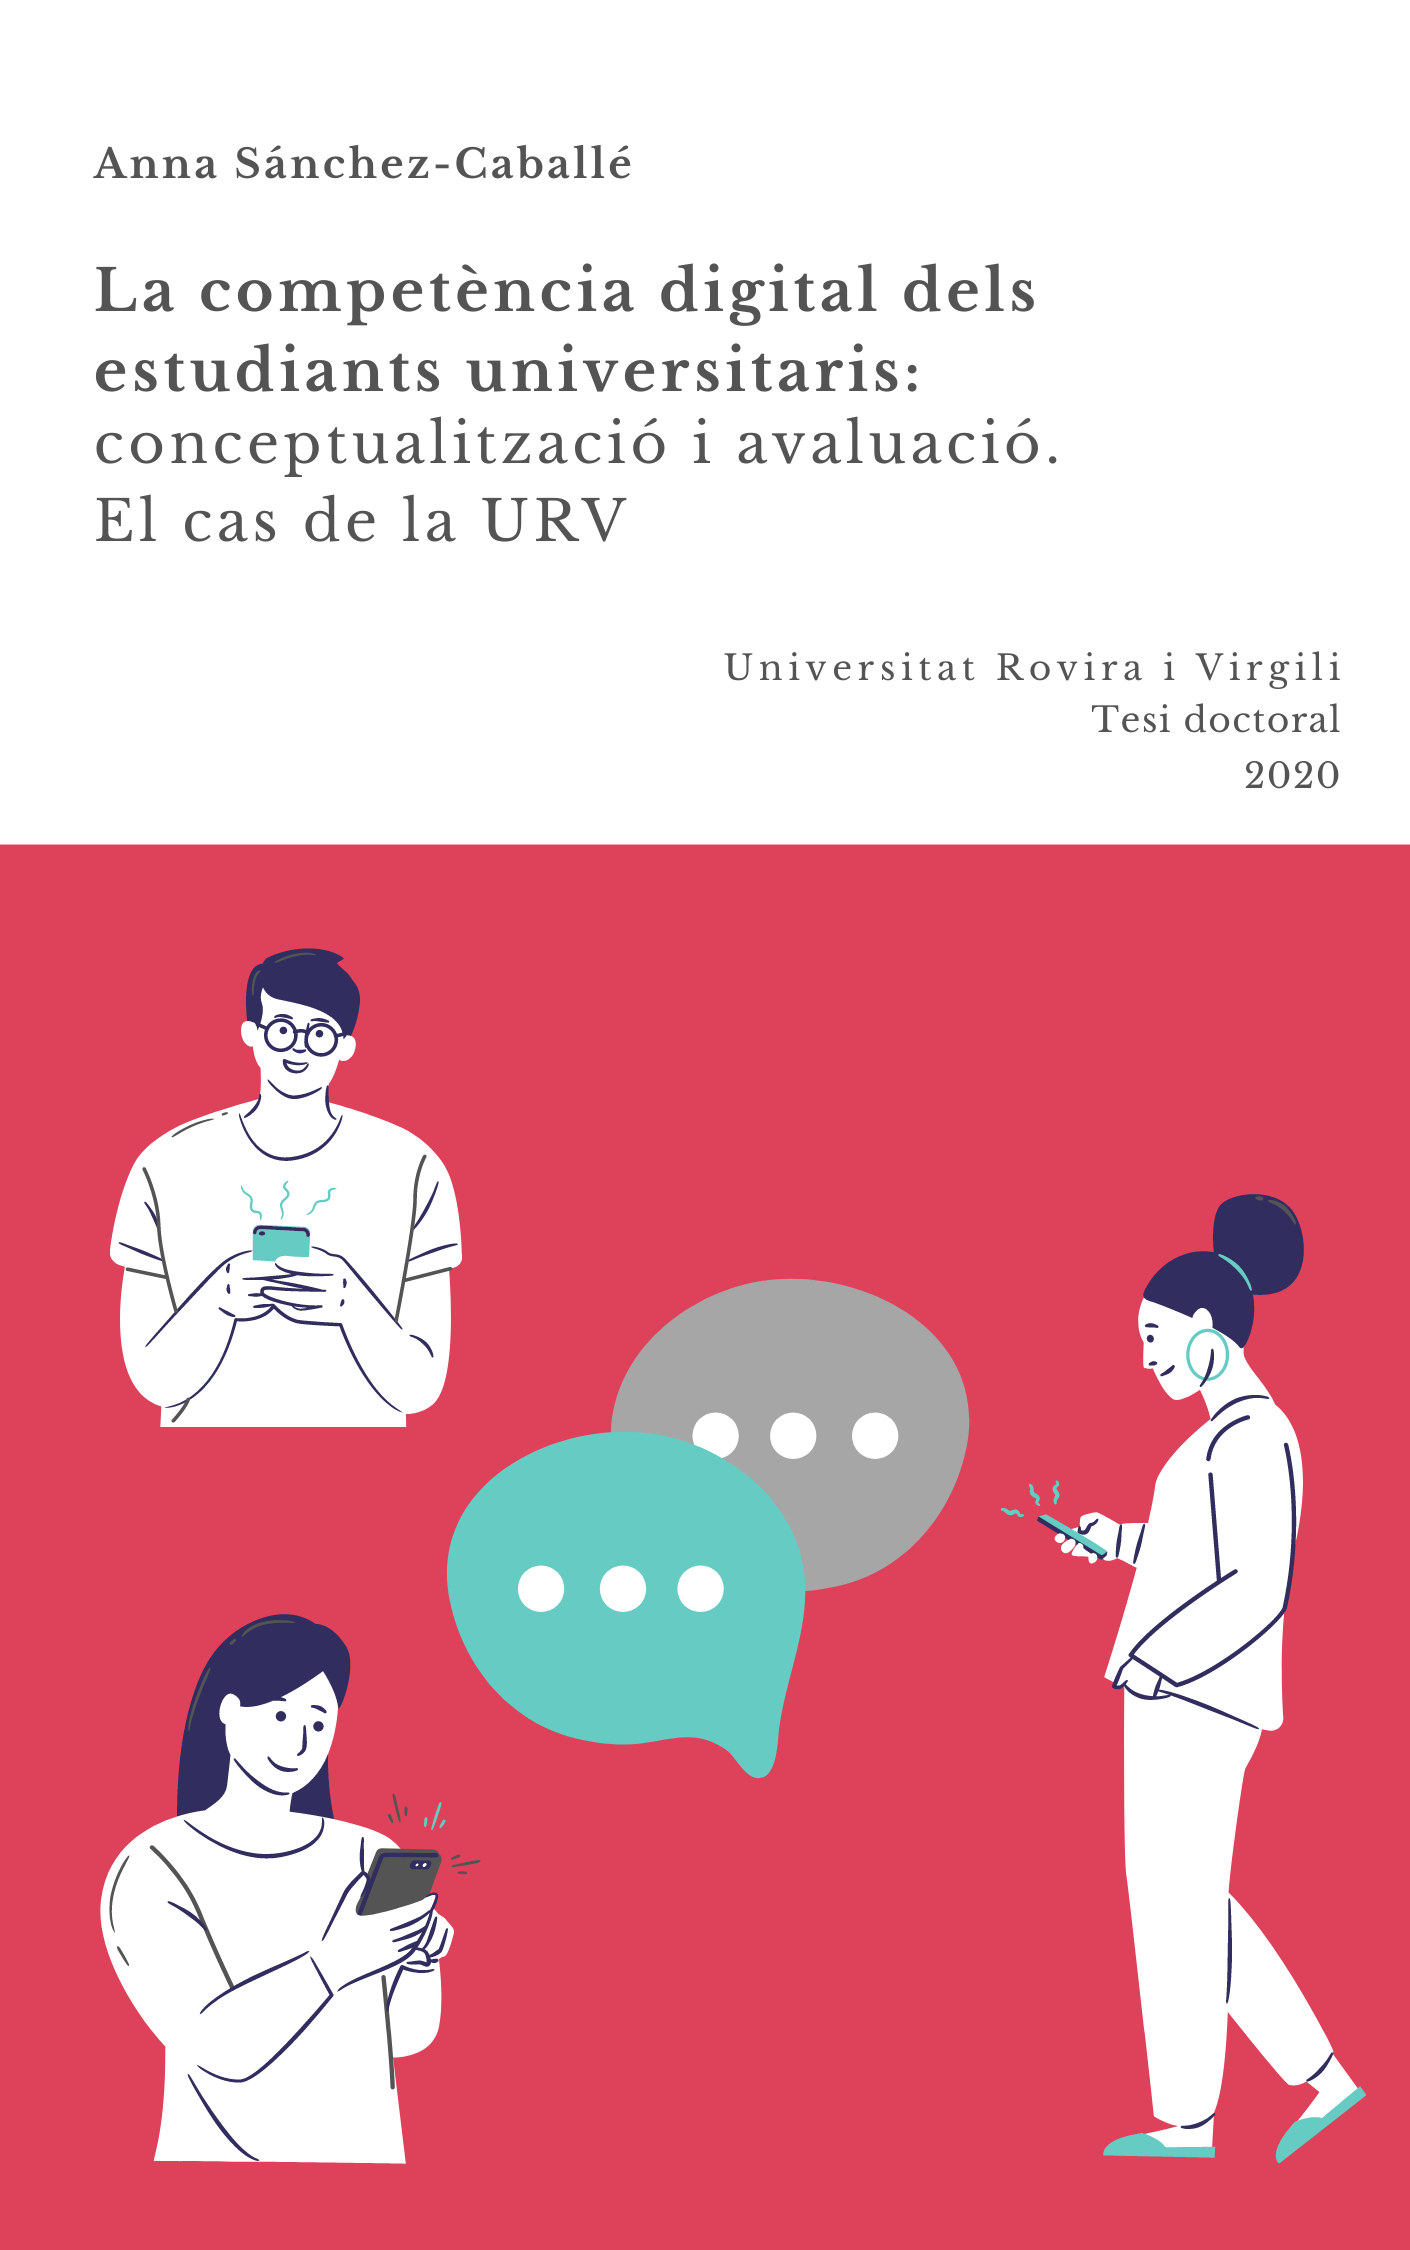 La competència digital dels estudiants universitaris: conceptualització i avaluació. El cas de la urv.